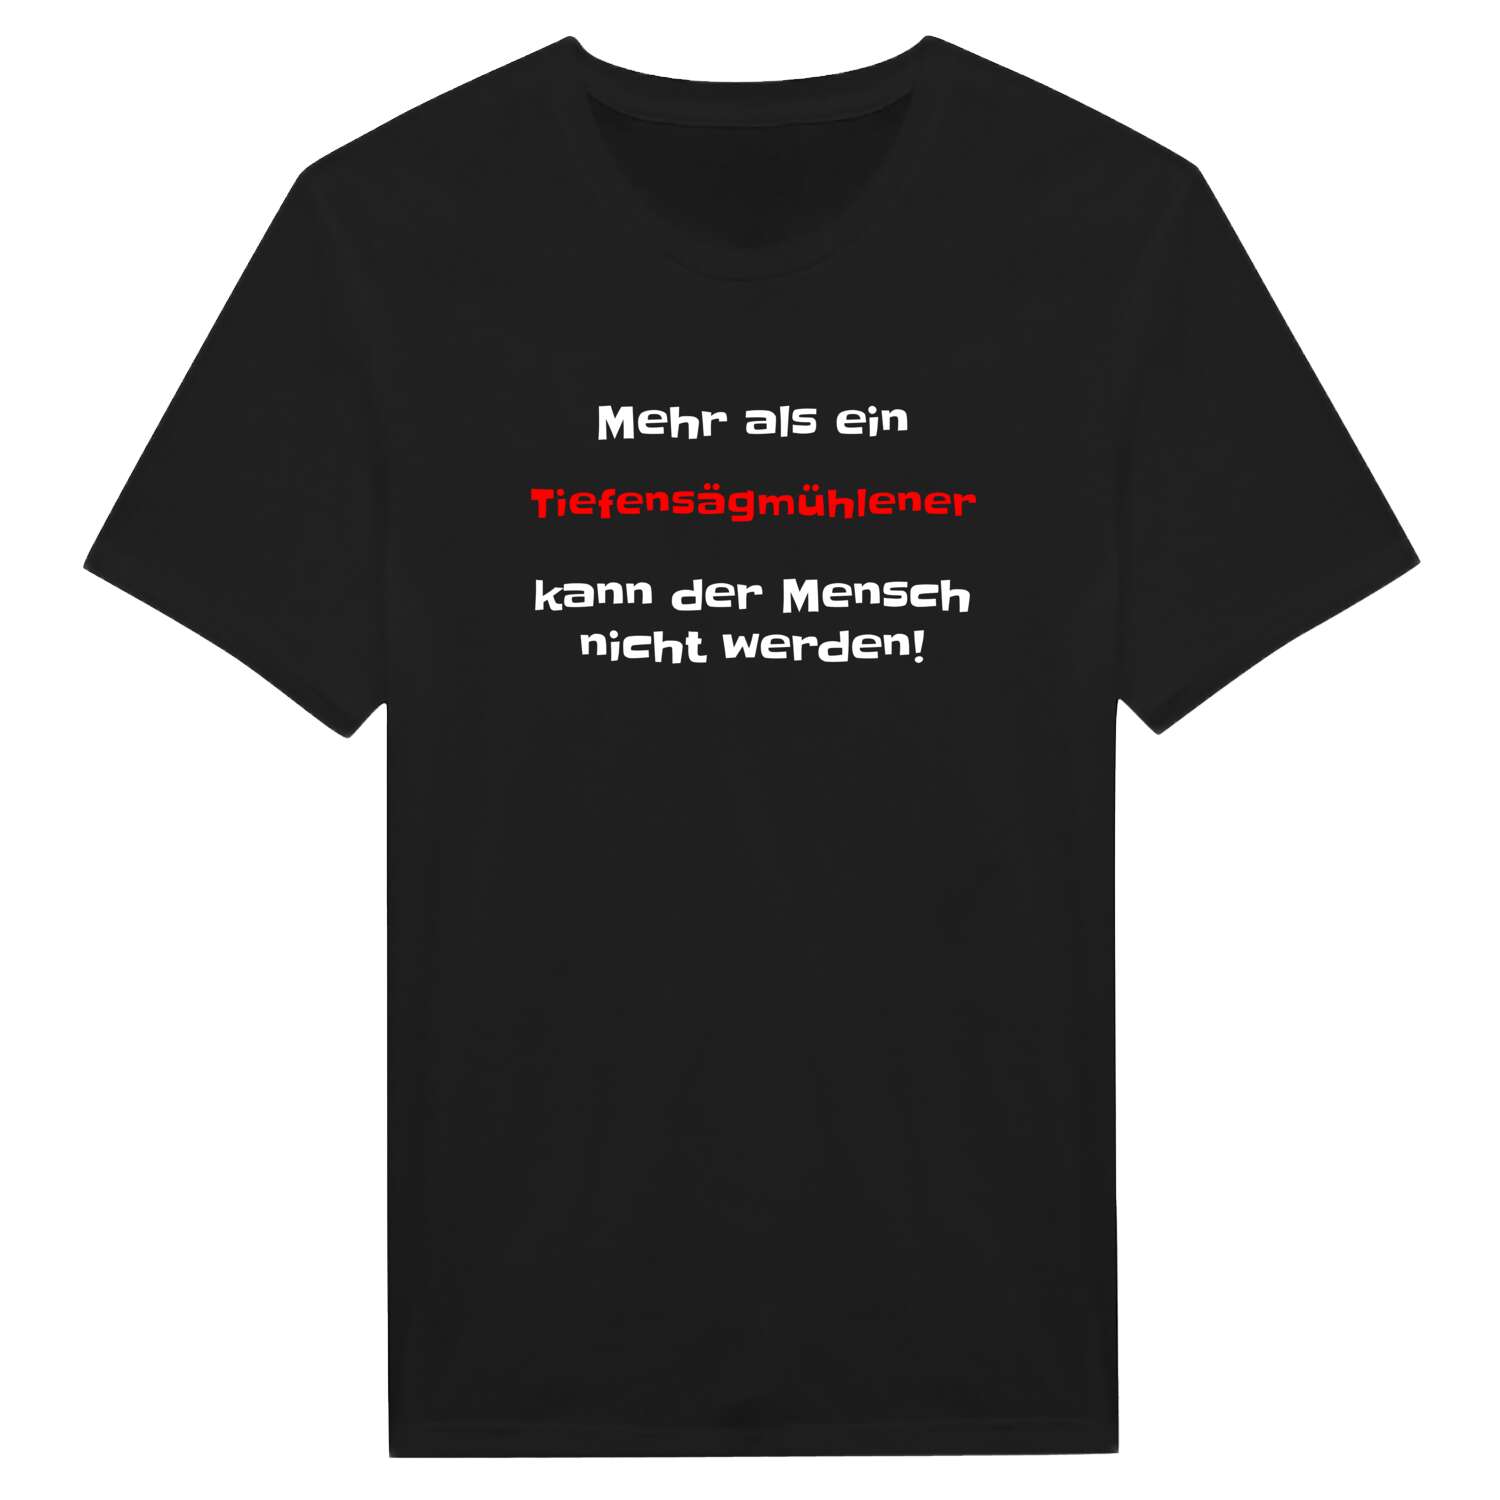 Tiefensägmühle T-Shirt »Mehr als ein«